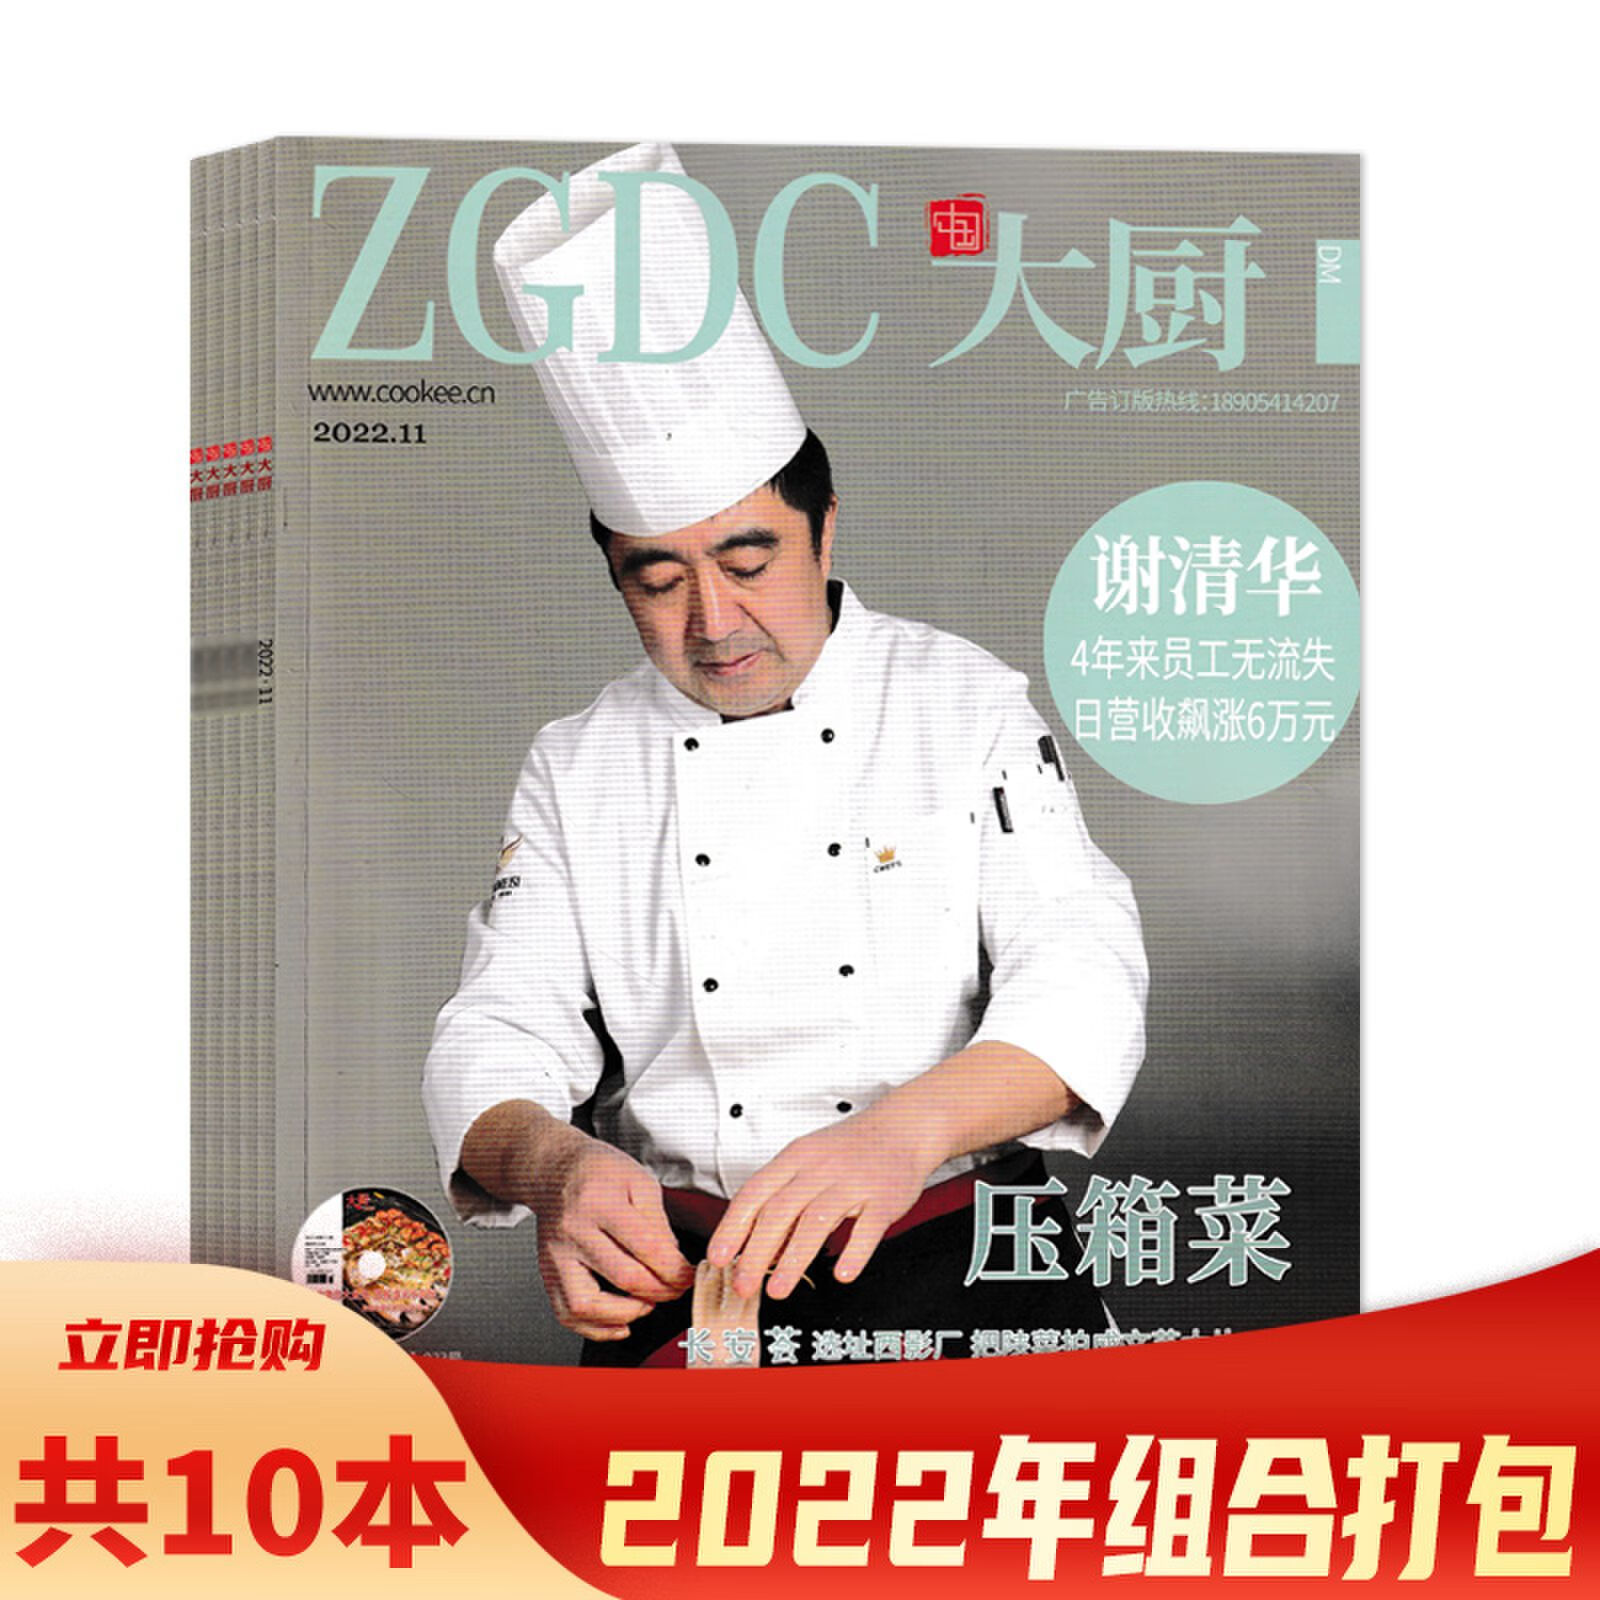 【套餐可选】赠光盘 共10本 ZGDC中国大厨杂志2022年3-11+2021年7 A.共10本 2022年1/3-11月